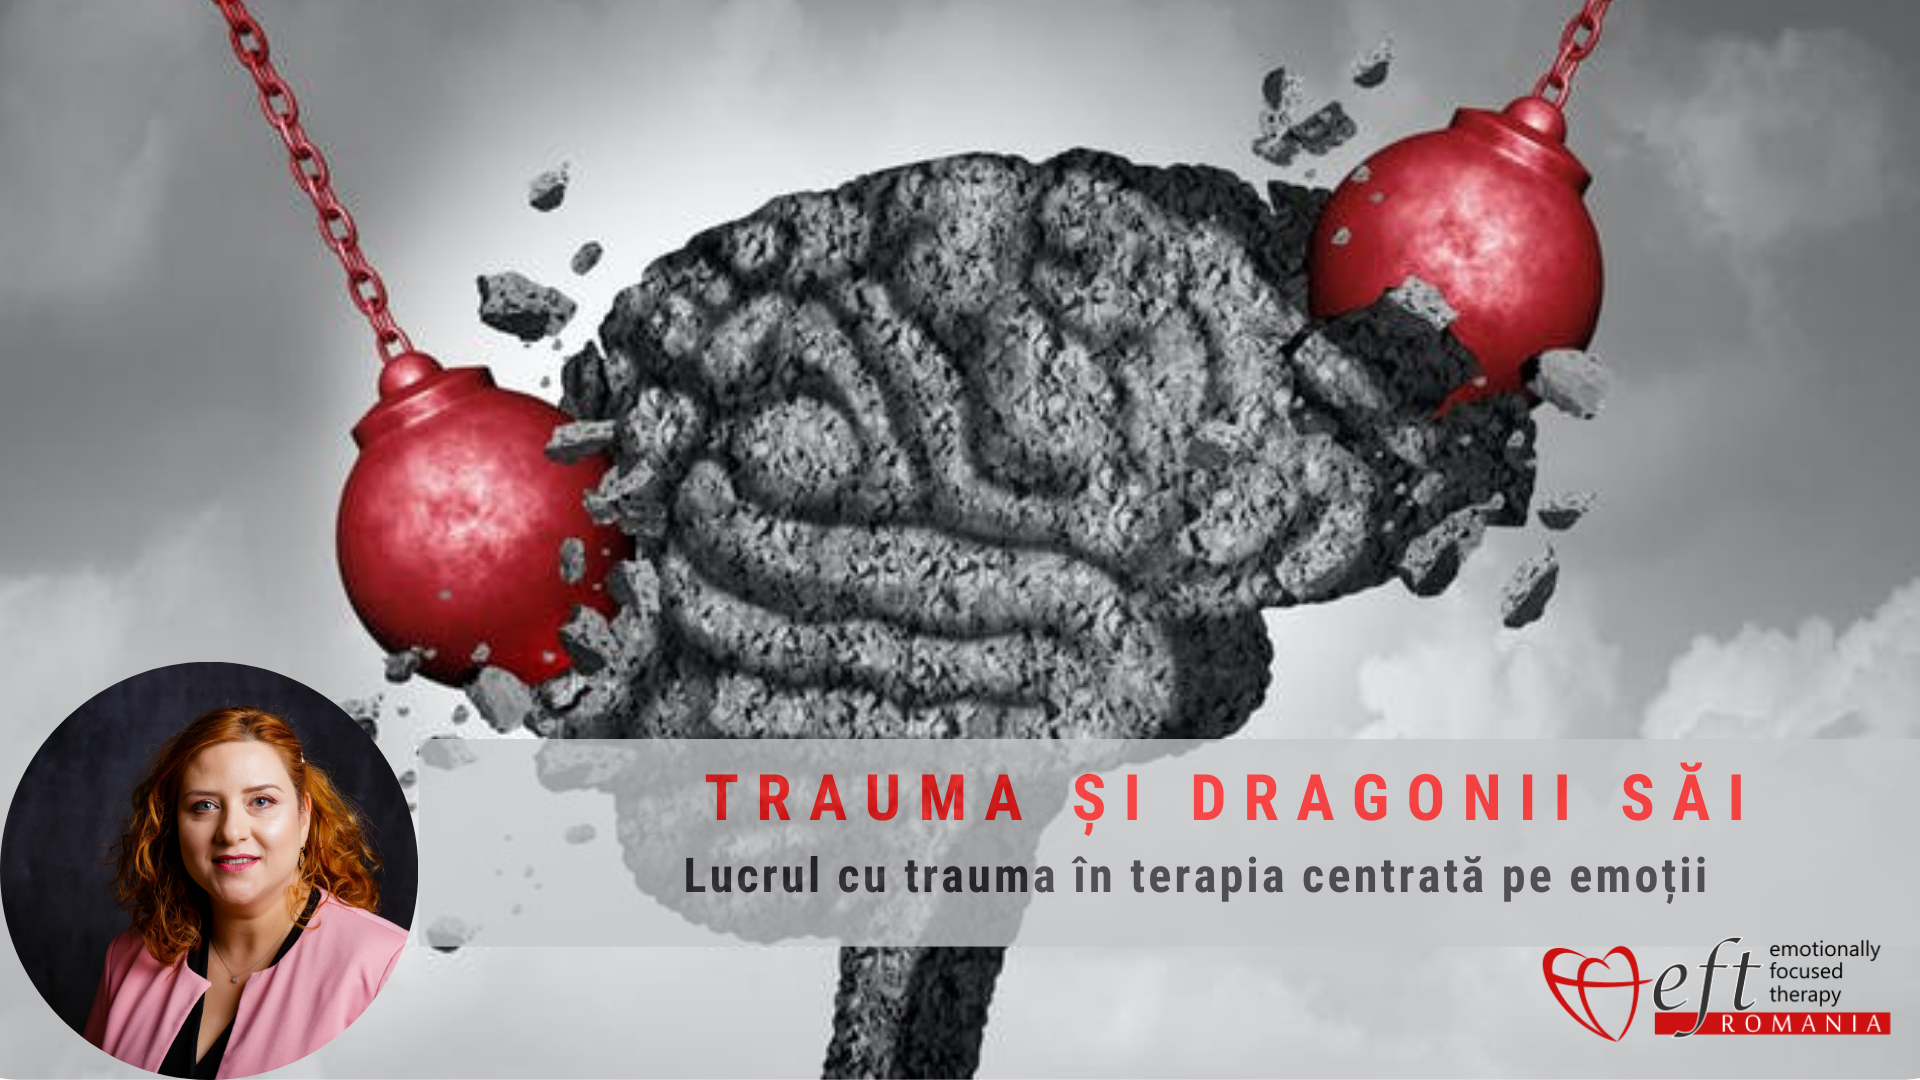 Trauma și dragonii săi: lucrul cu trauma în terapia individuală, centrată pe emoții